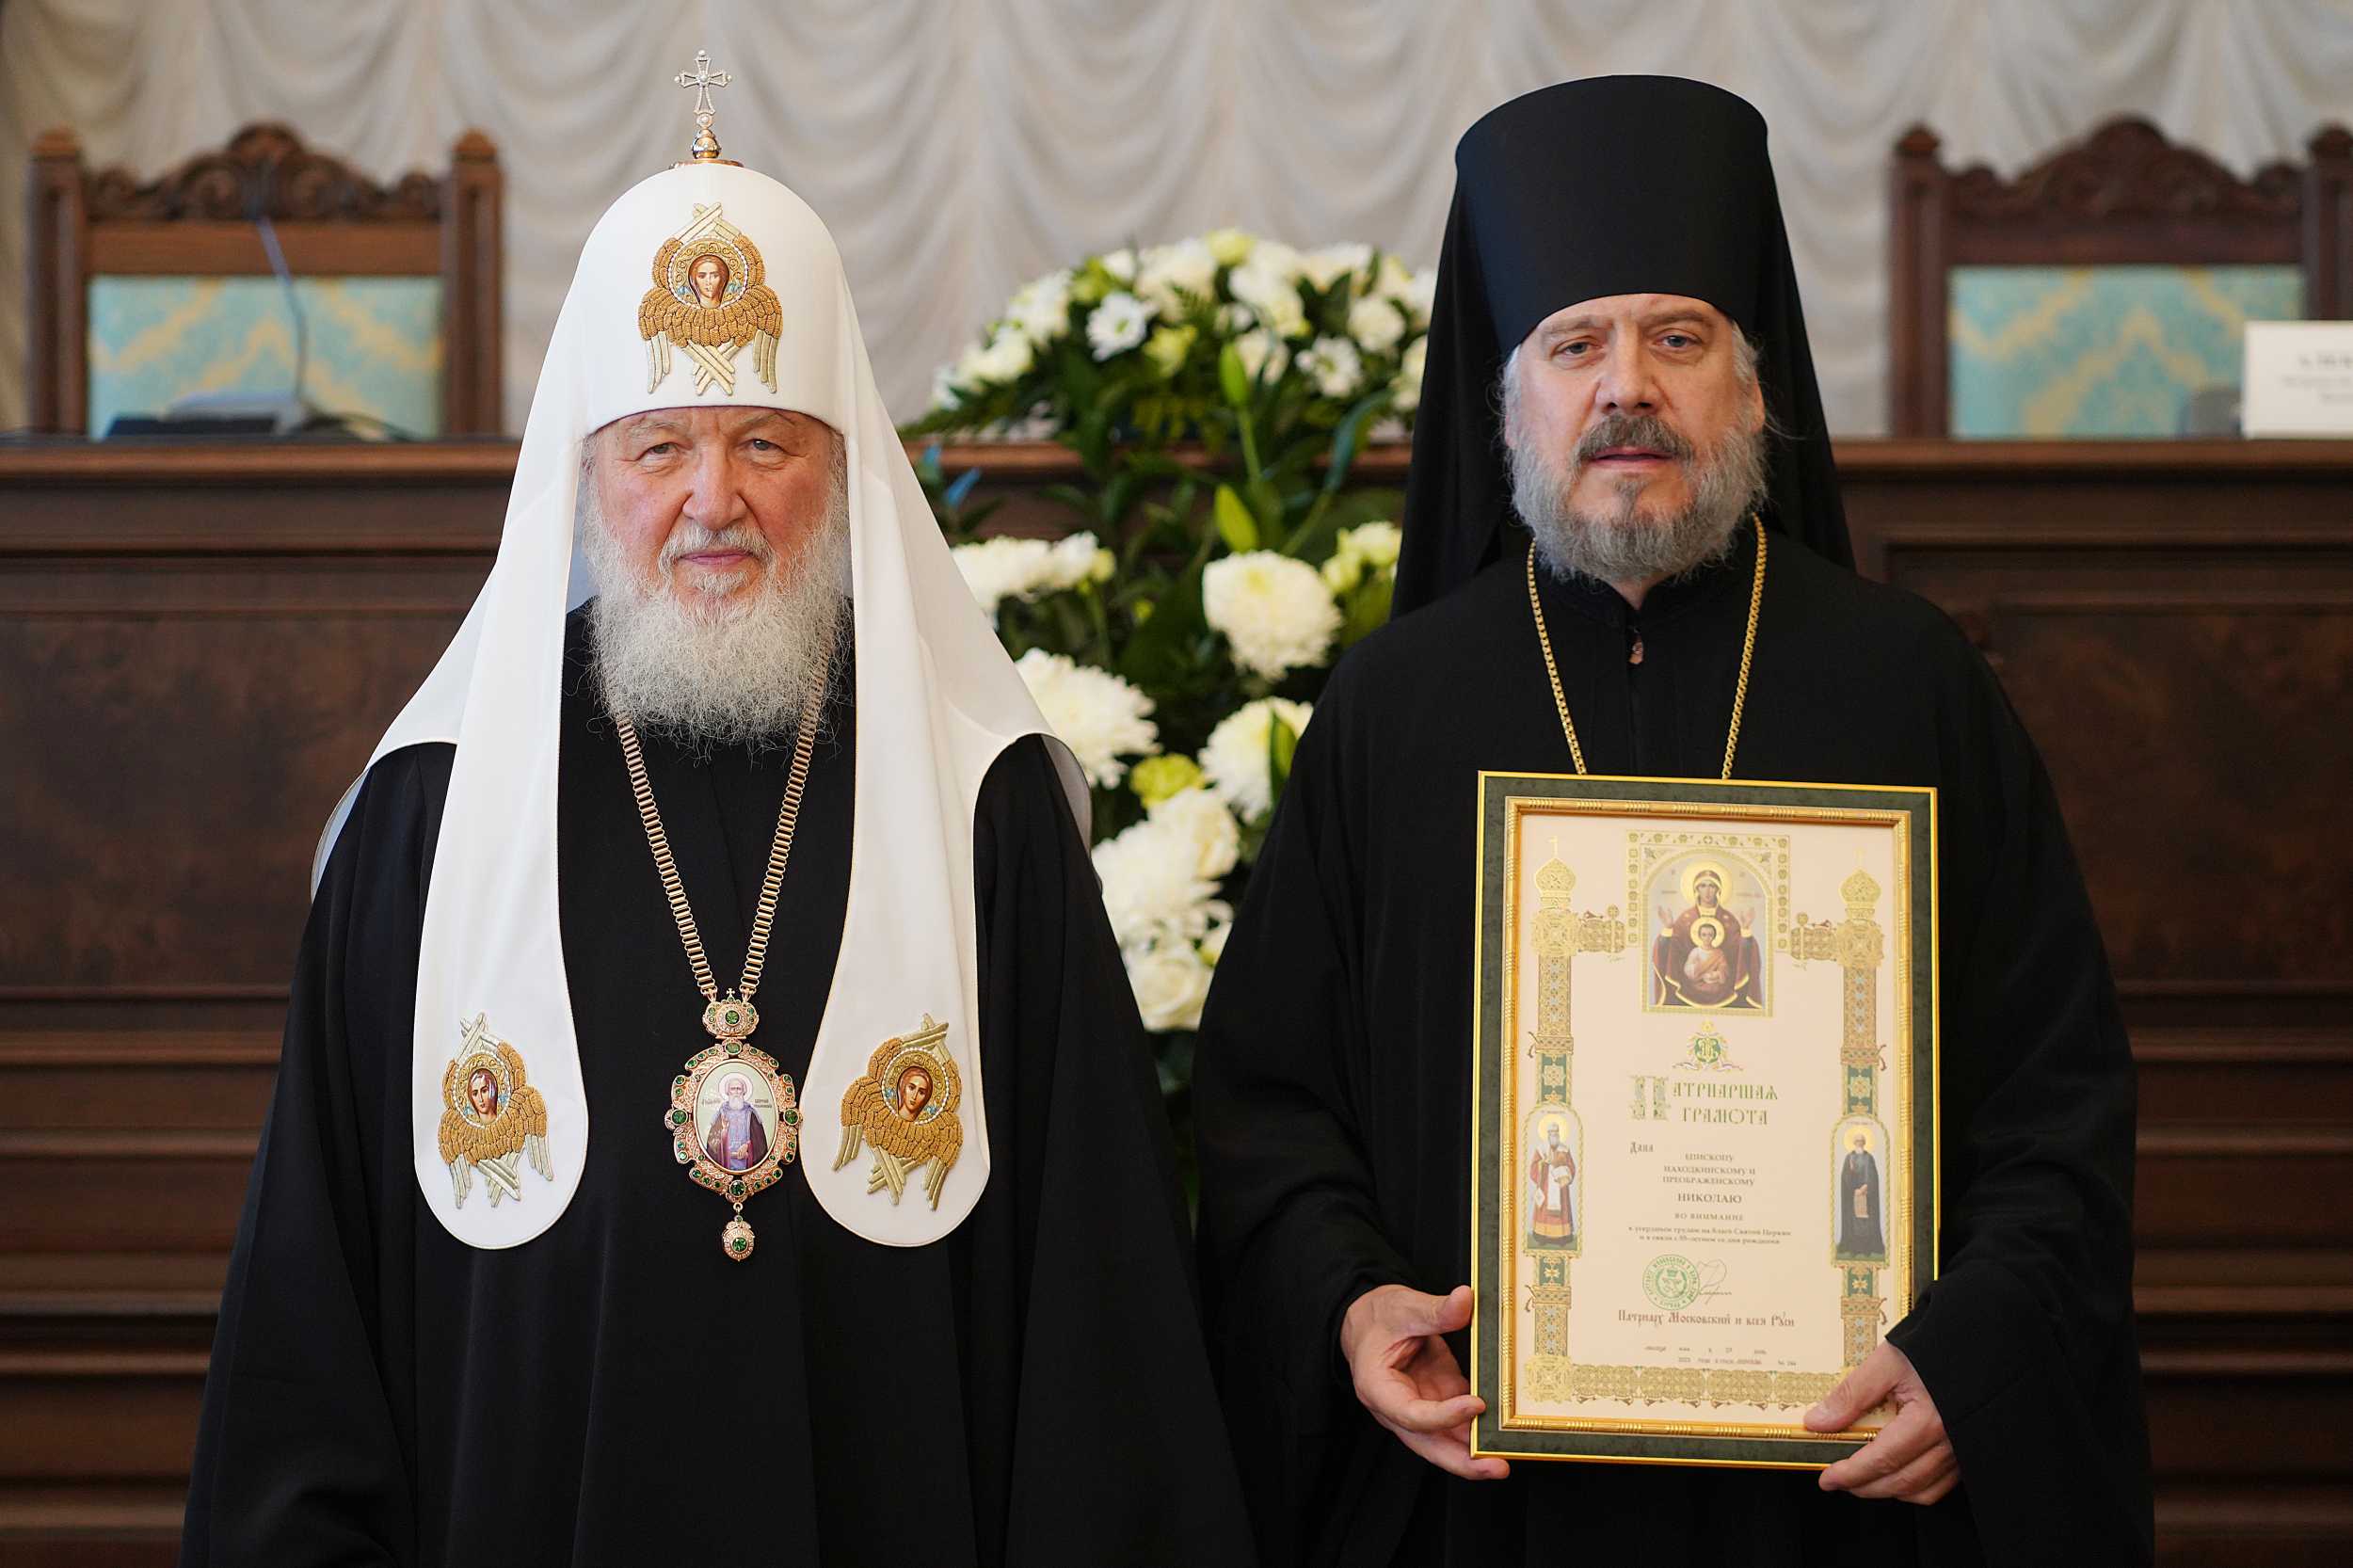 Епископ Находкинский и Преображенский Николай удостоен Патриаршей грамоты.